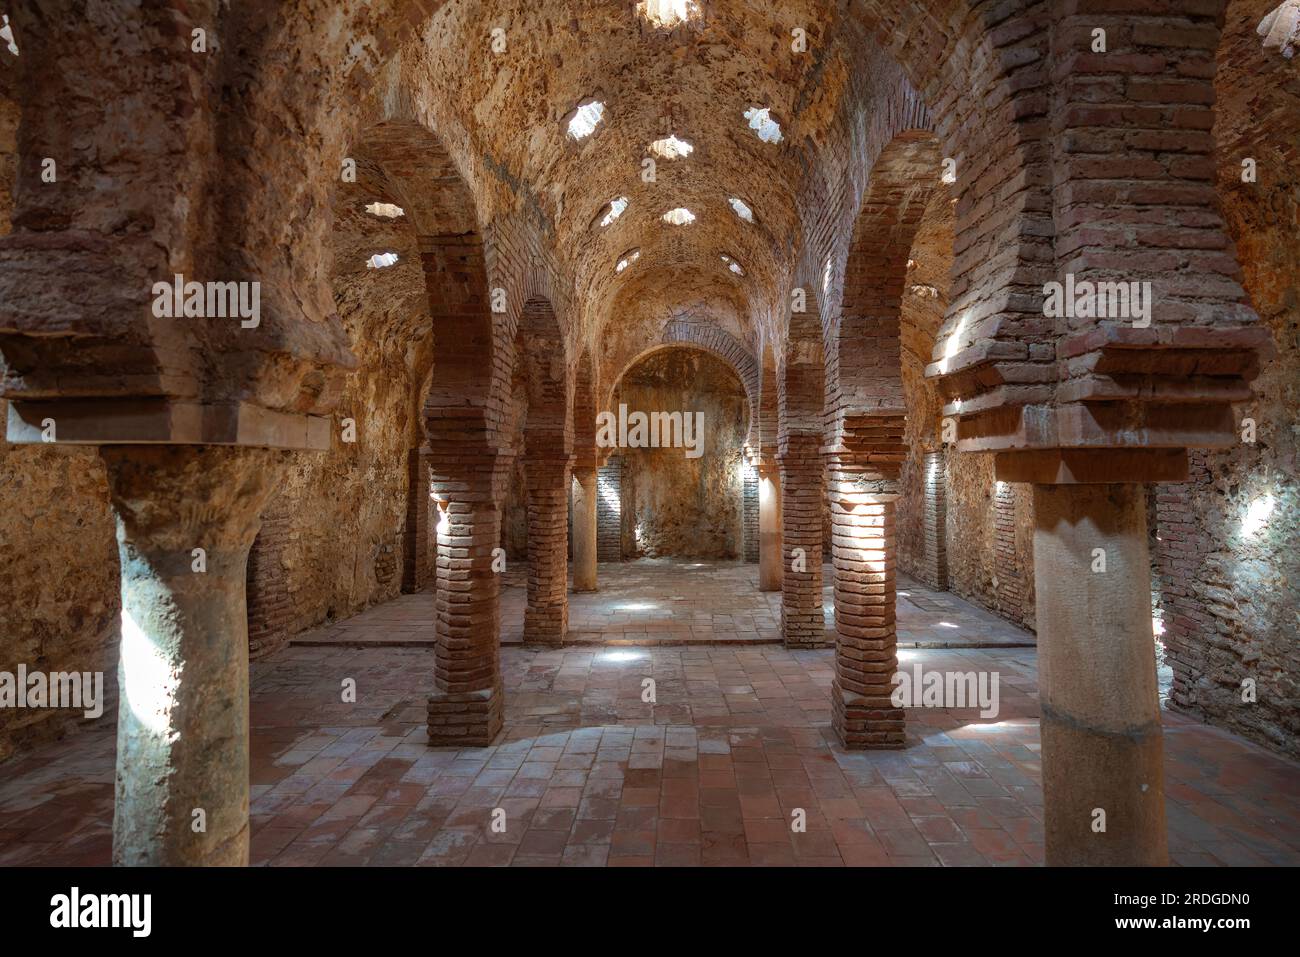 Chambre chaleureuse à Arab Baths of Ronda Interior - Ronda, Andalousie, Espagne Banque D'Images